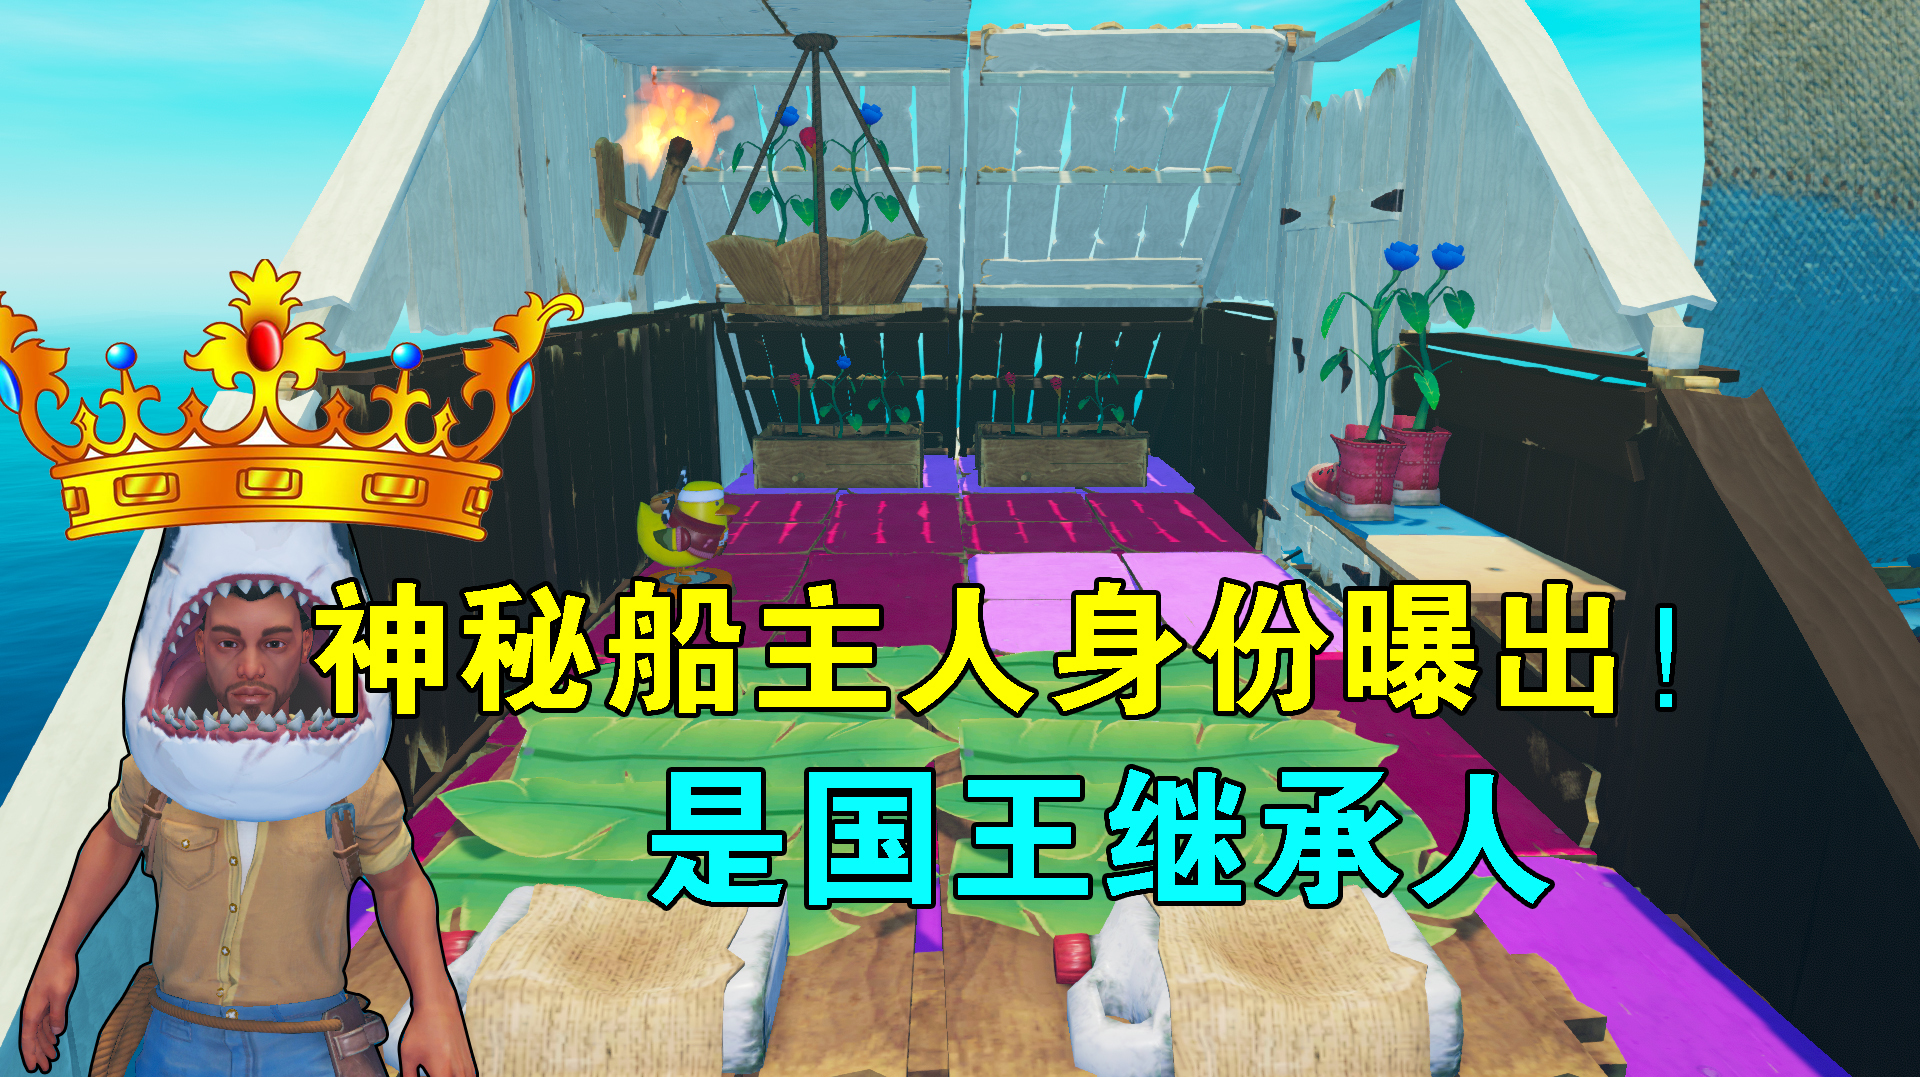 小辉哥游戏解说:沙盒类游戏《木筏求生》的视频合集(四)